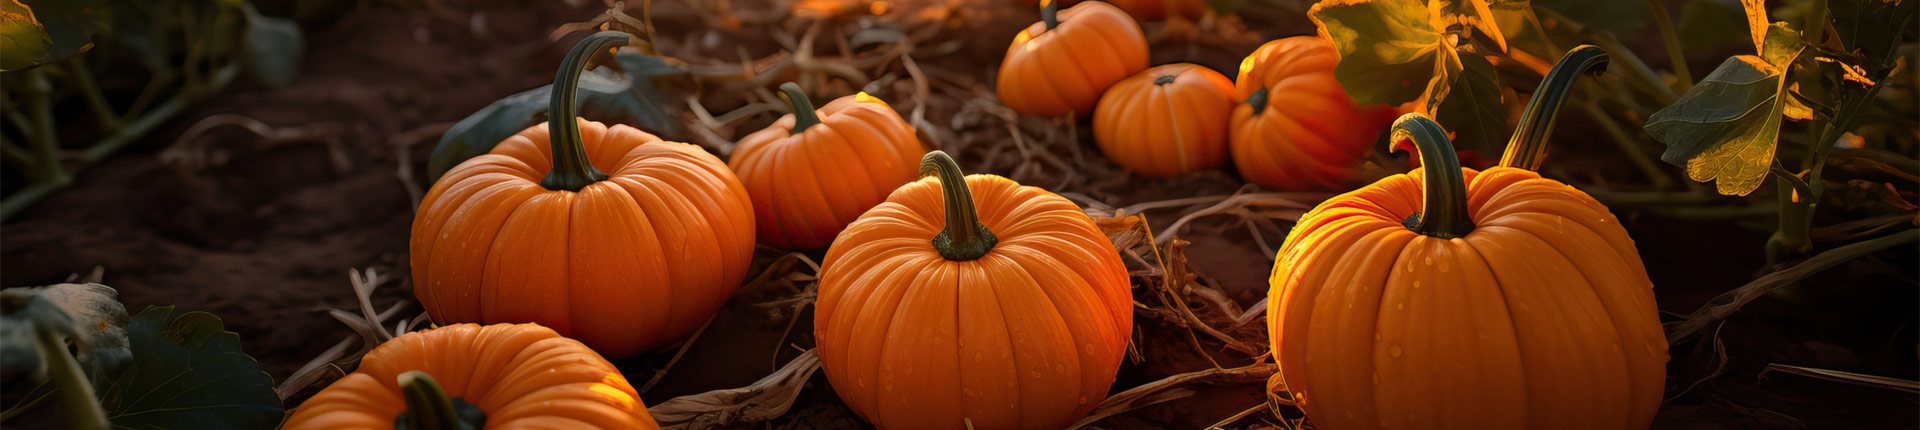 Smaki jesieni — co warto jeść o tej porze roku?